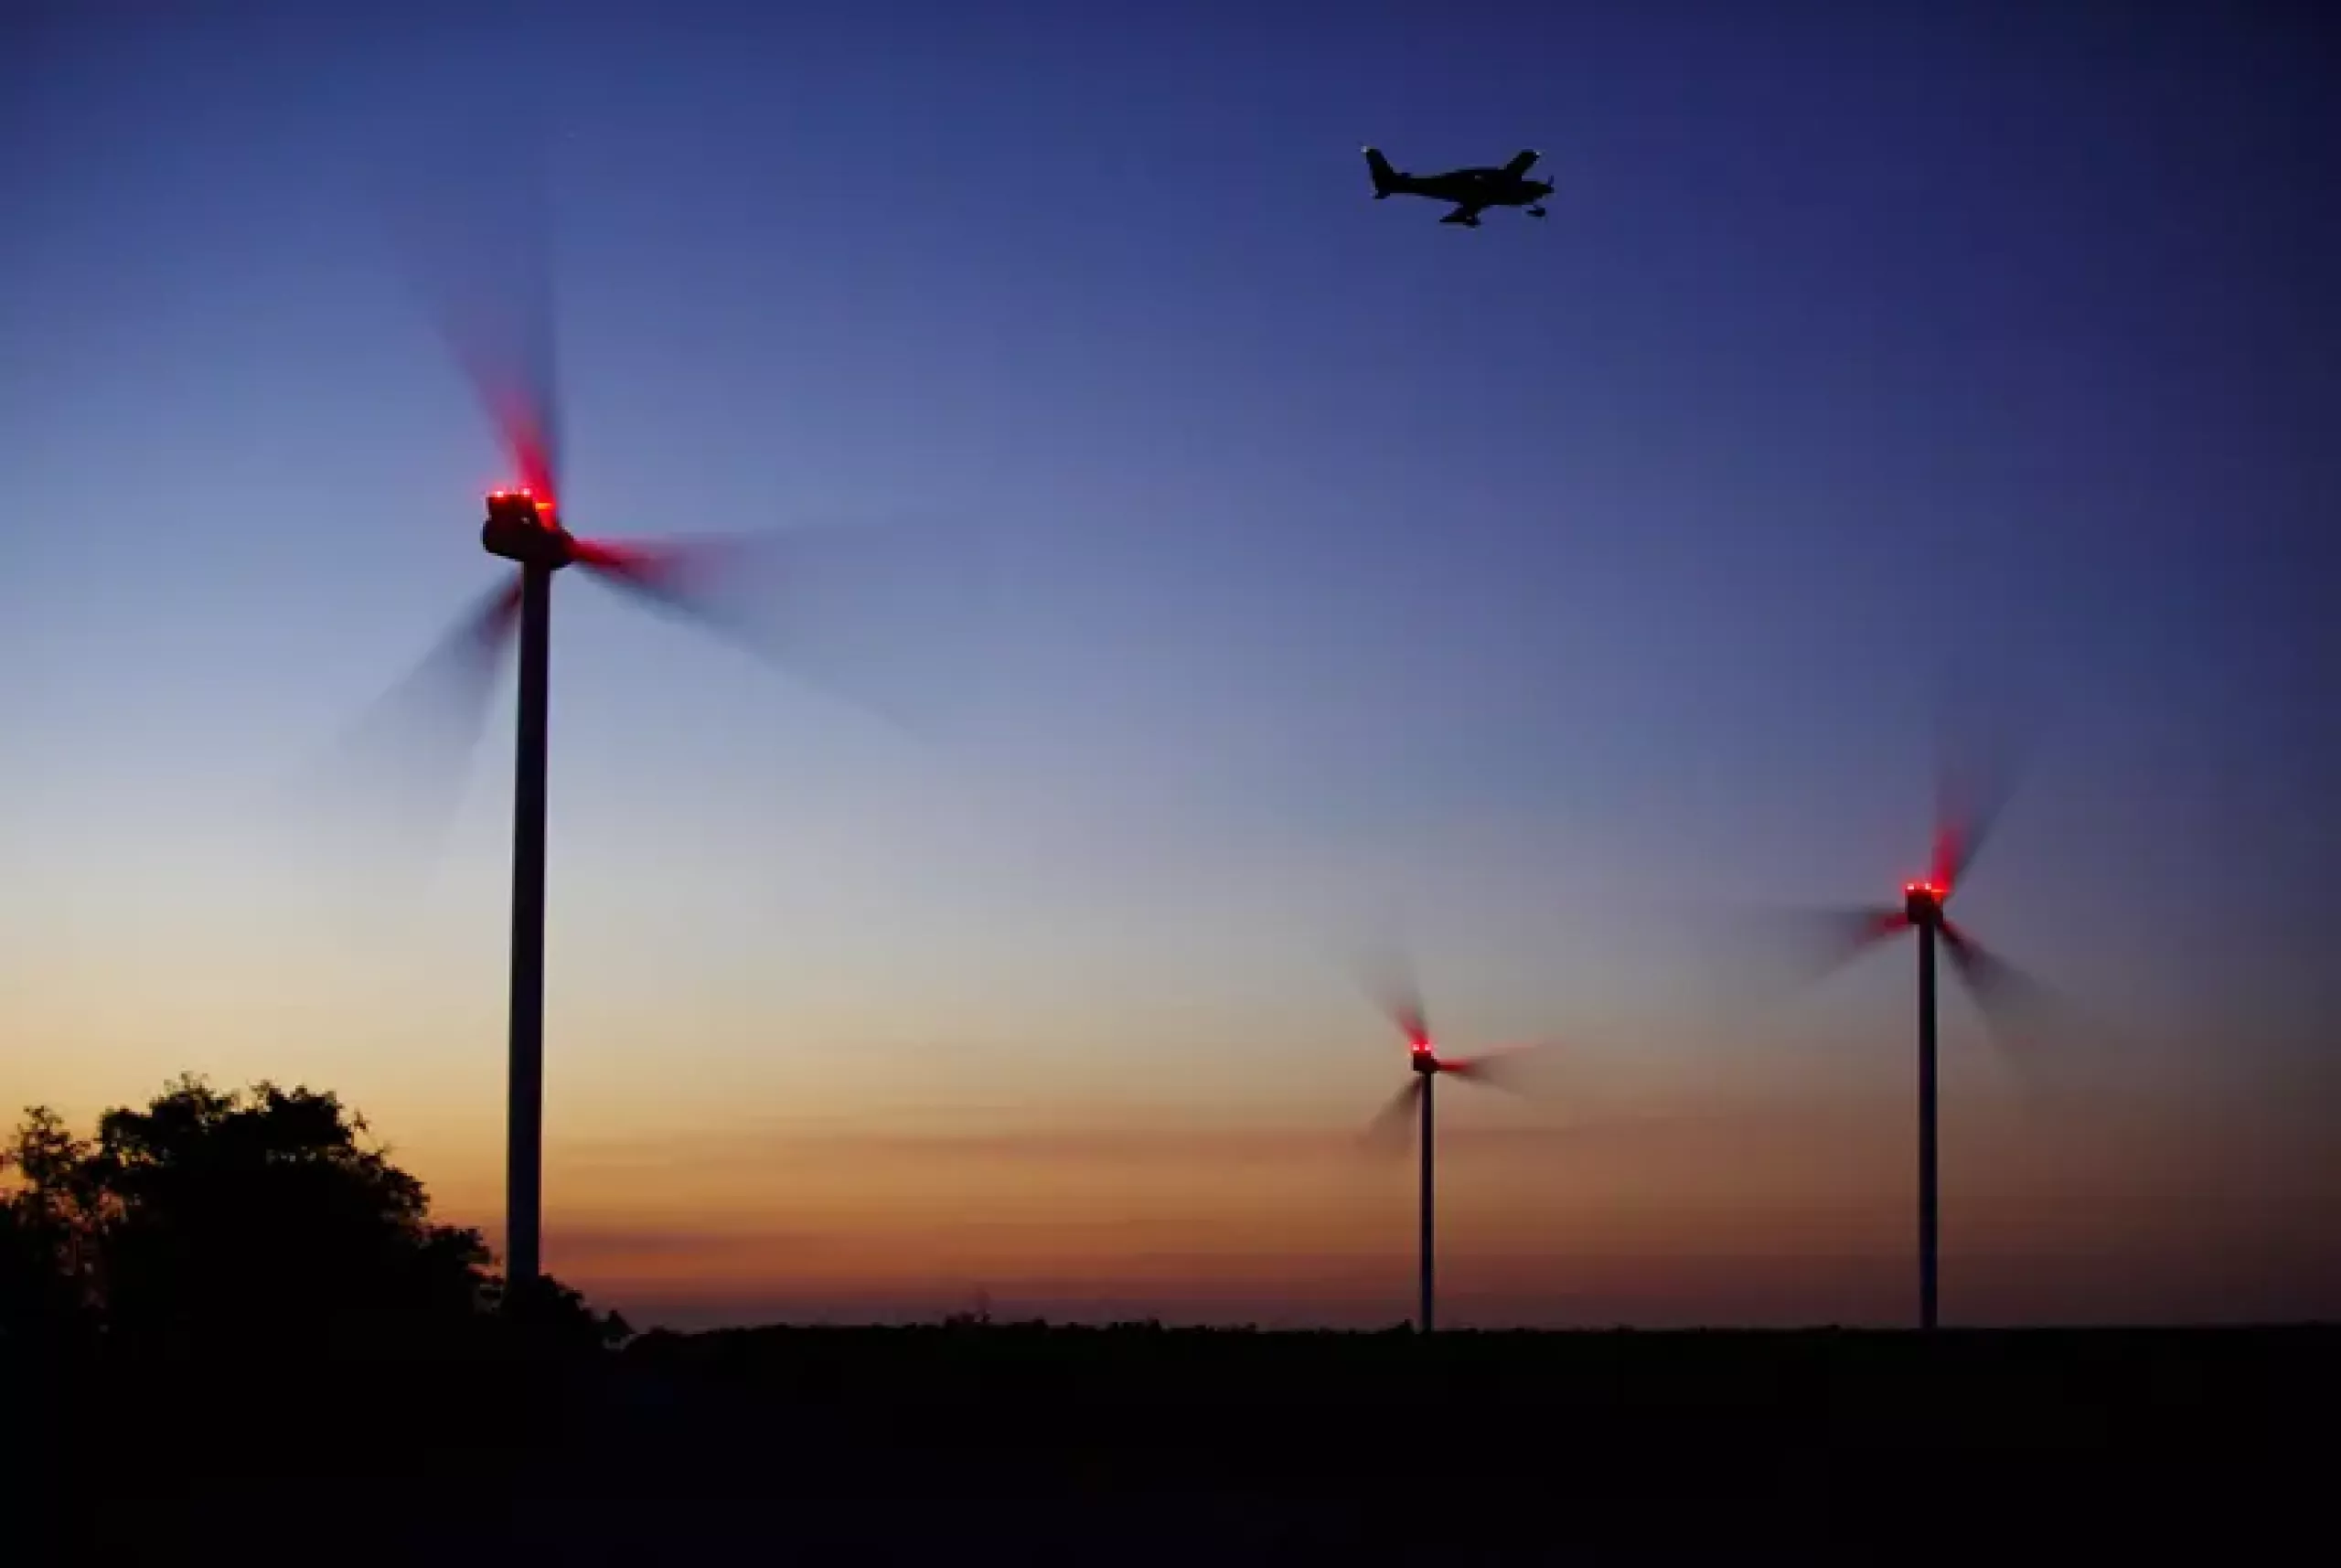 Drei Windenergieanlagen mit roten Lichtern sind durch bedarfsgesteuerter Nachtkennzeichnung bei Dämmerung beleuchtet, während ein Flugzeug im dunkler werdenden Himmel darüber fliegt.